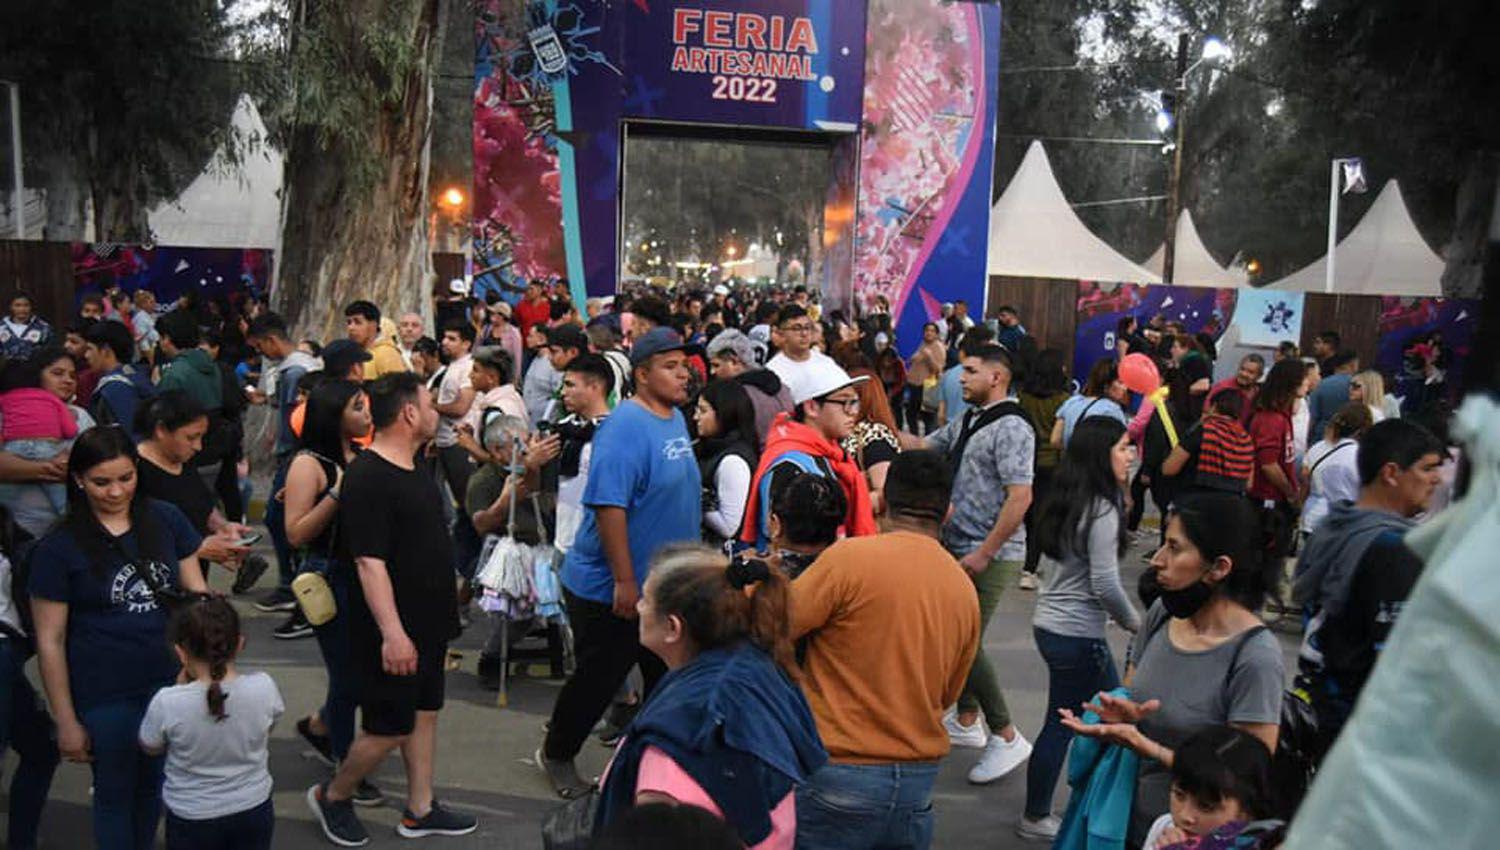 La Feria Artesanal viviraacute hoy su uacuteltima jornada con una imponente agenda